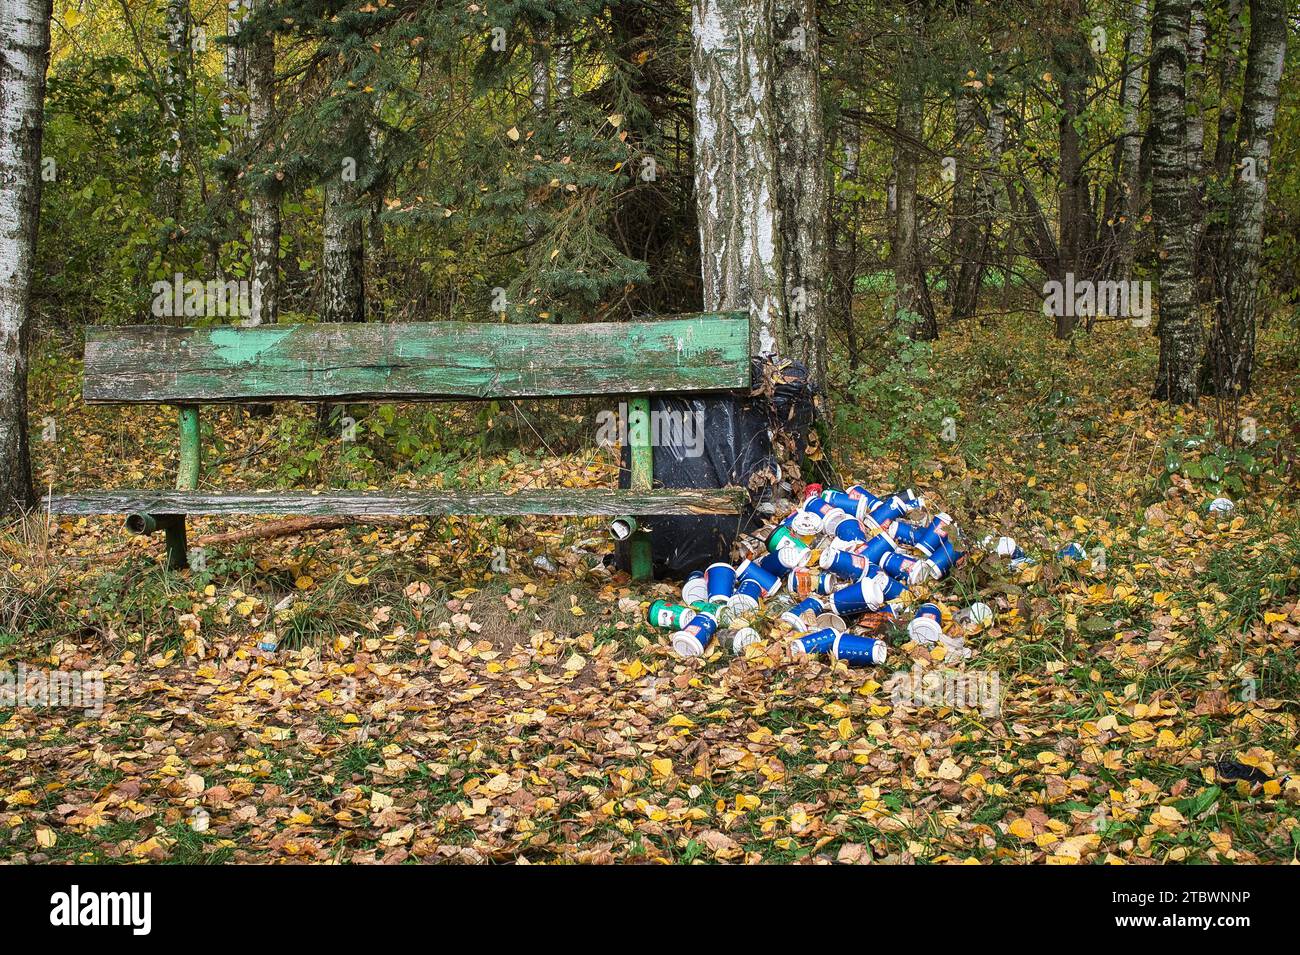 Pile de canettes et de conteneurs à côté d'un banc en bois rustique dans un peuplement dense de forêt décidue en automne dans un concept de pollution environnementale Banque D'Images